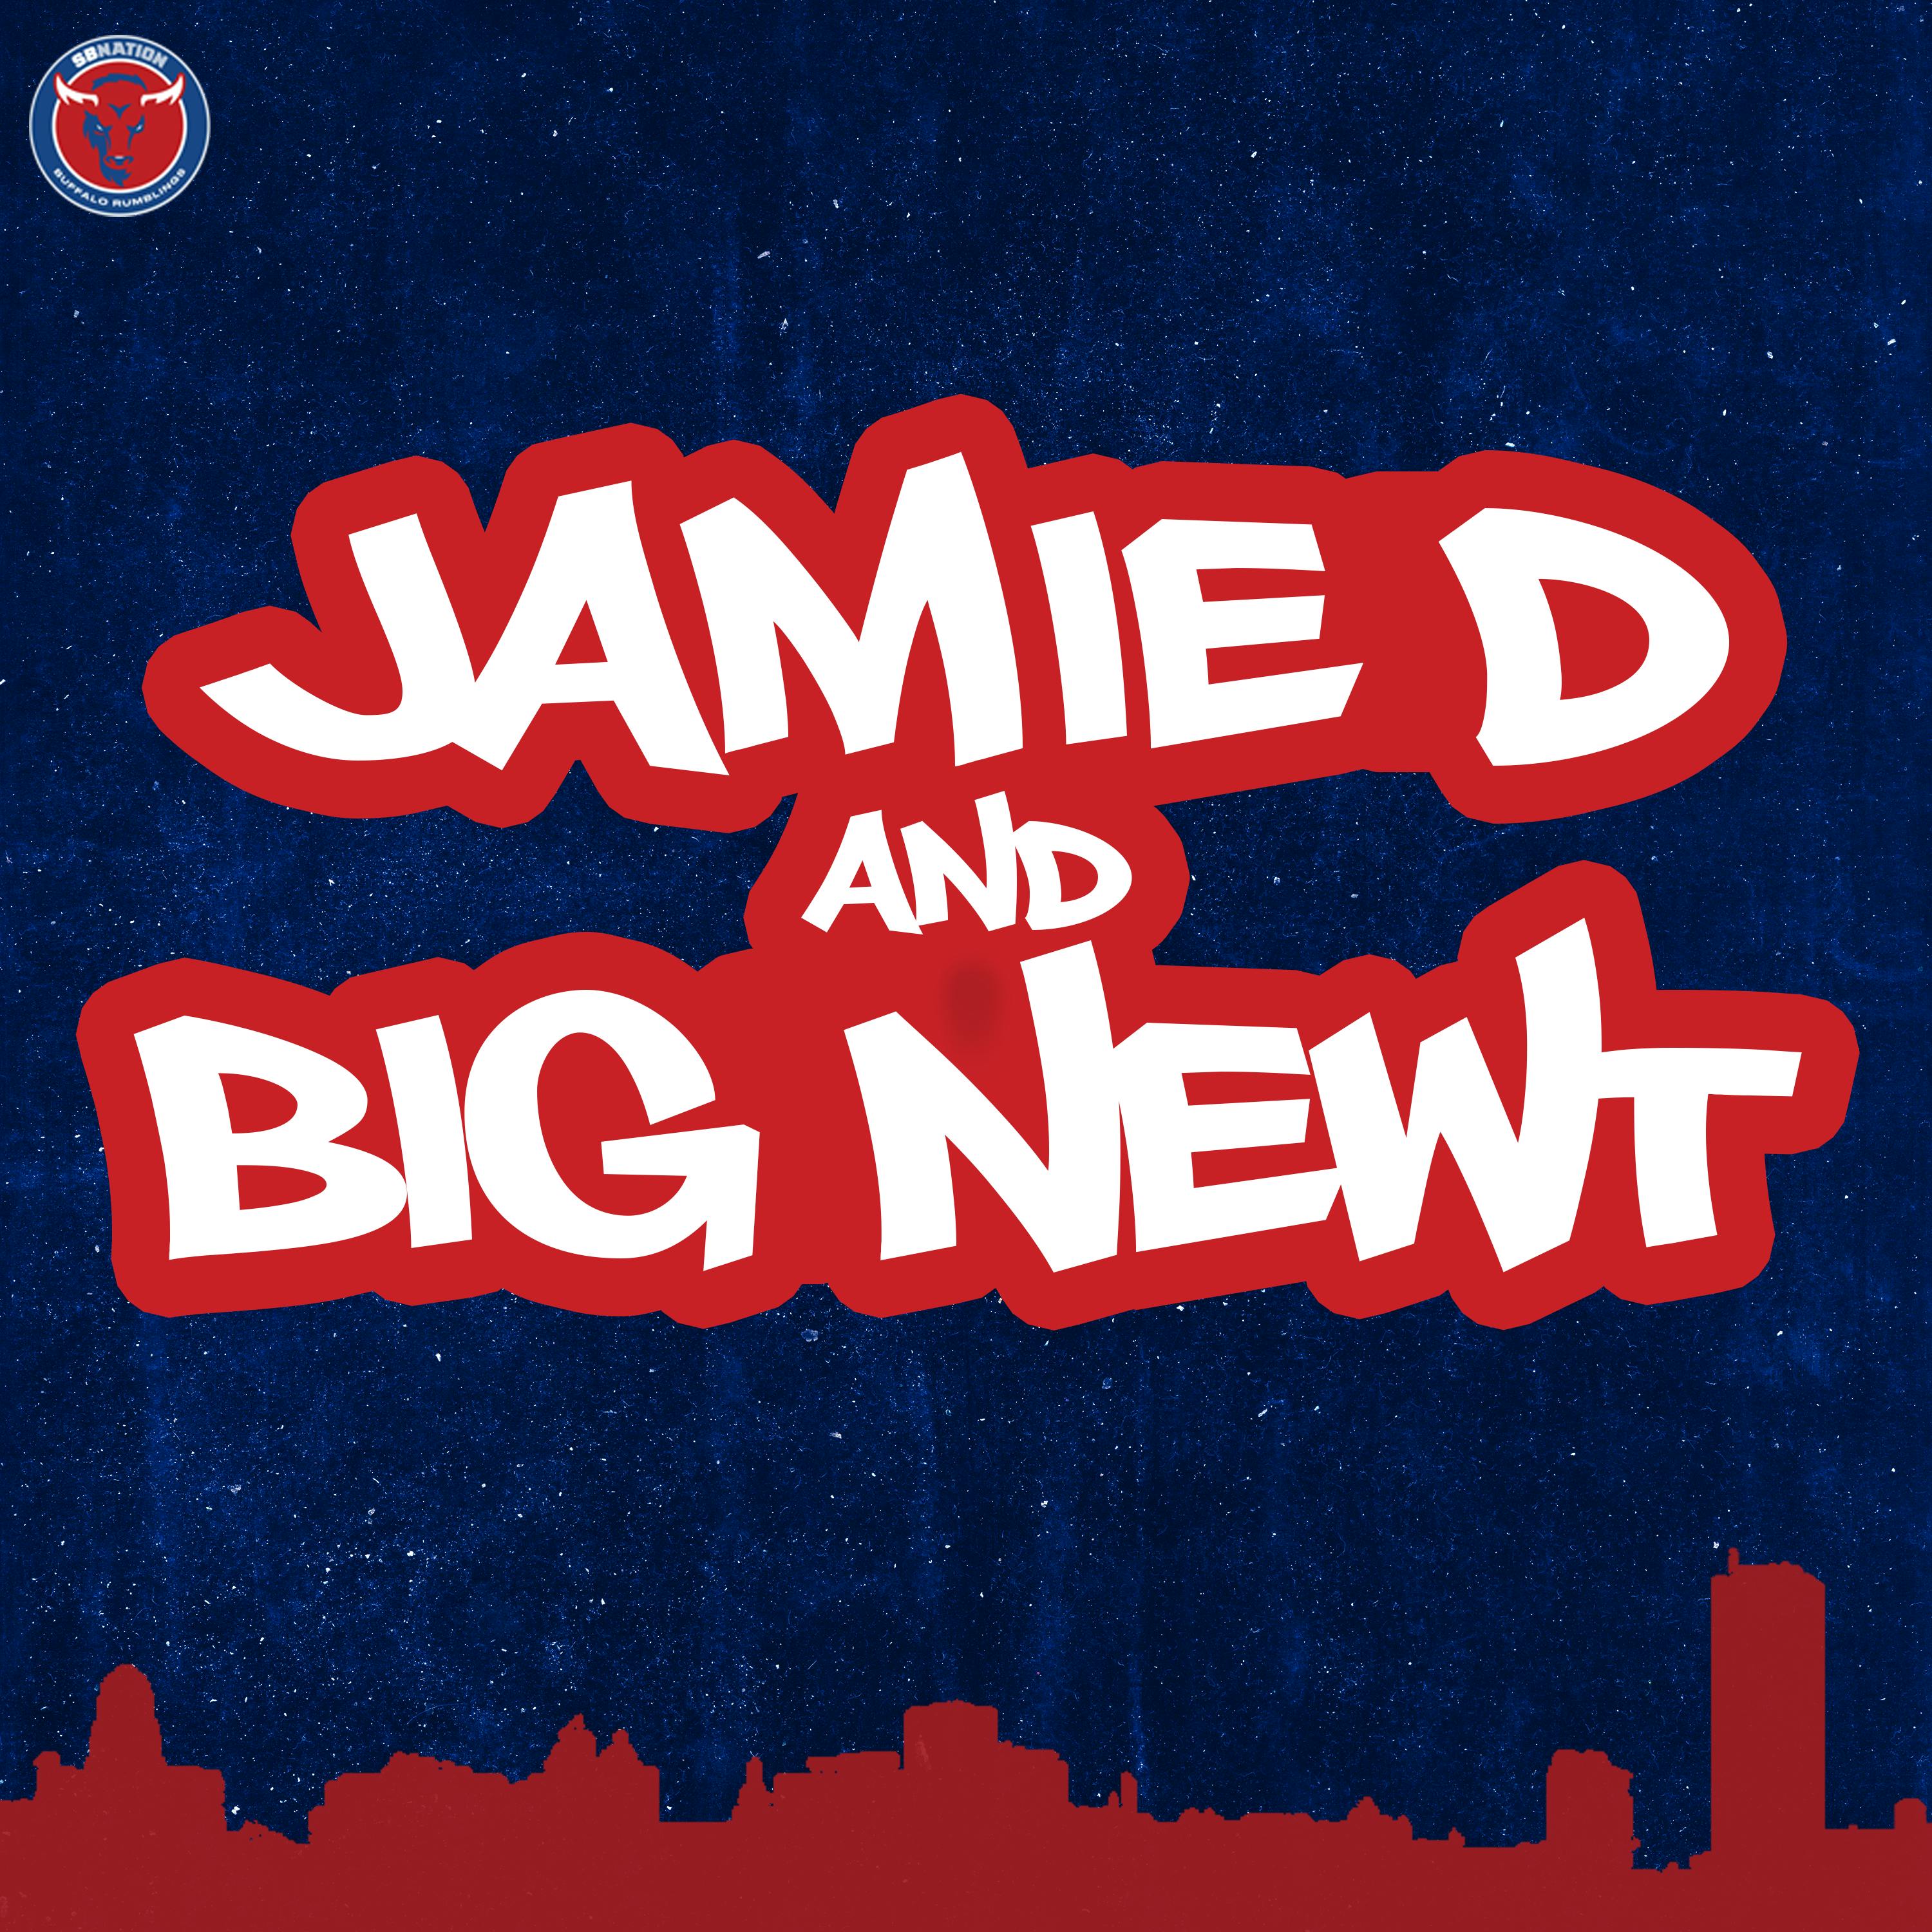 Jamie D & Big Newt: It's a Bills playoff fiesta